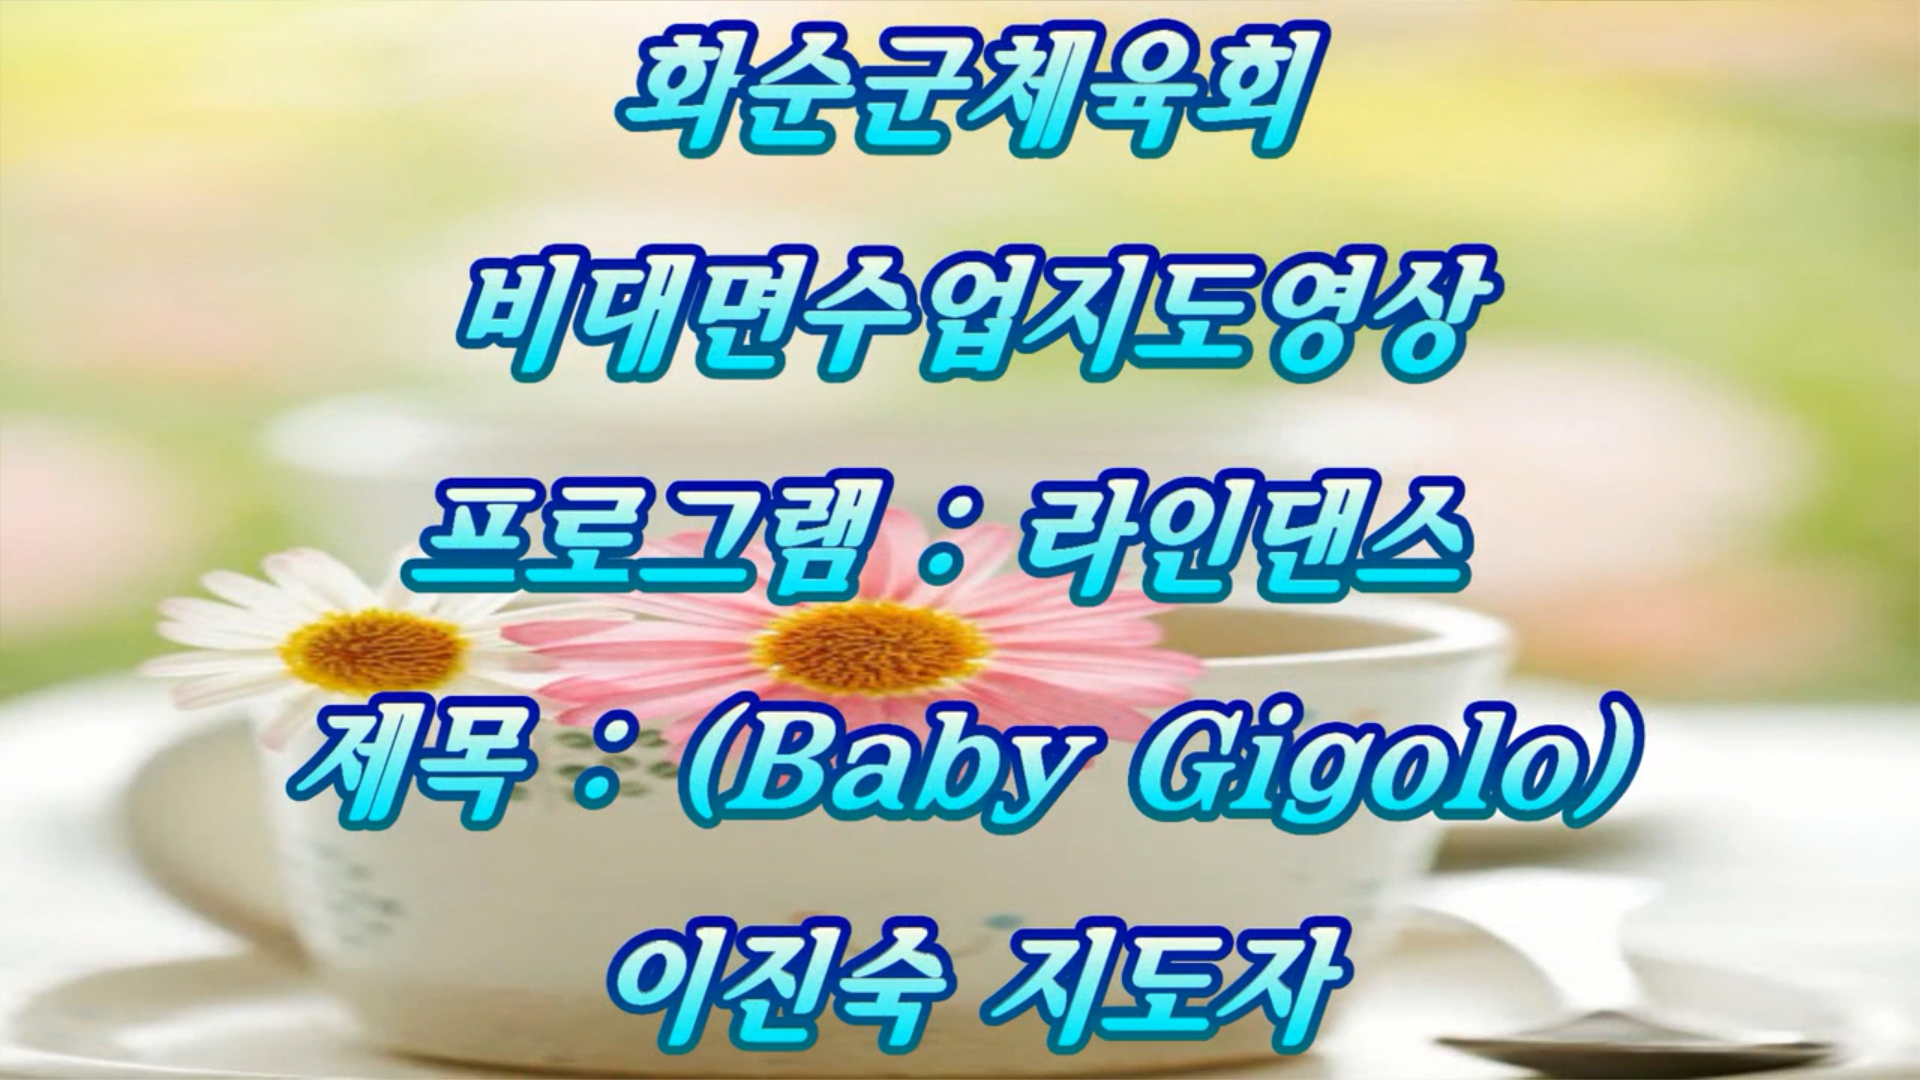 10월 화순군체육회 비대면교육영상, (라인댄스)제목-baby gigolo